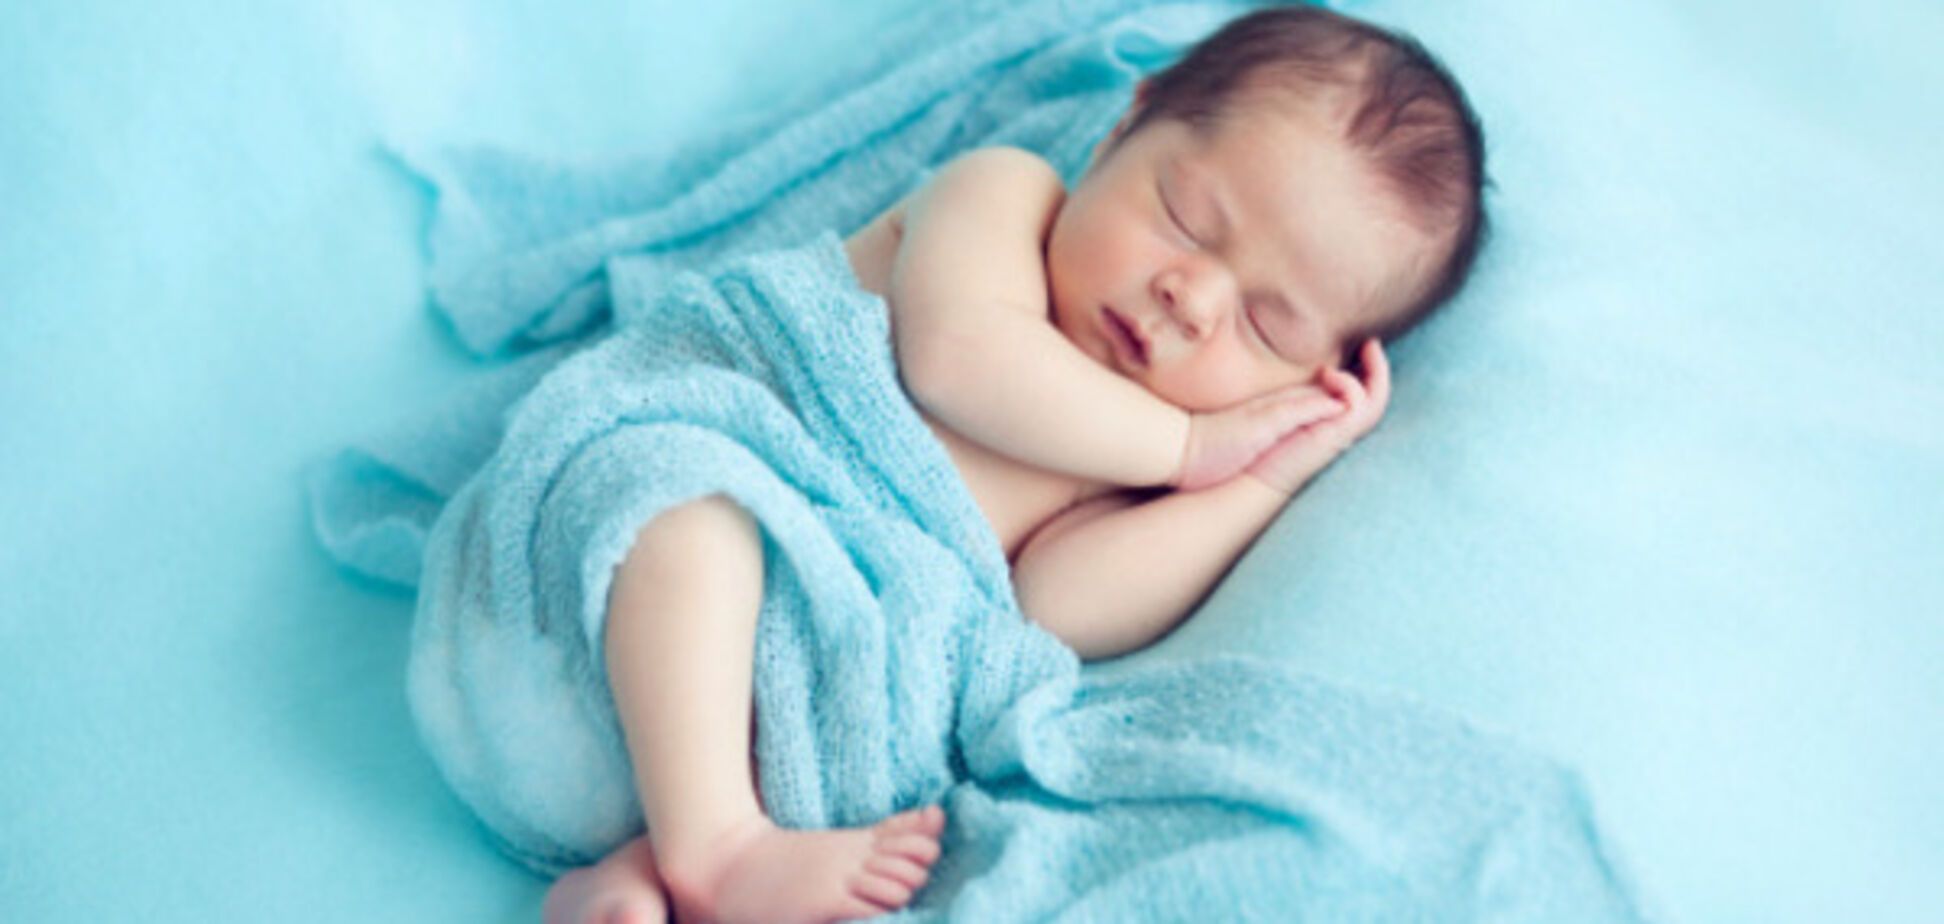 Безопасный сон младенца: советы от 5-месячного малыша, как укладывать спать правильно